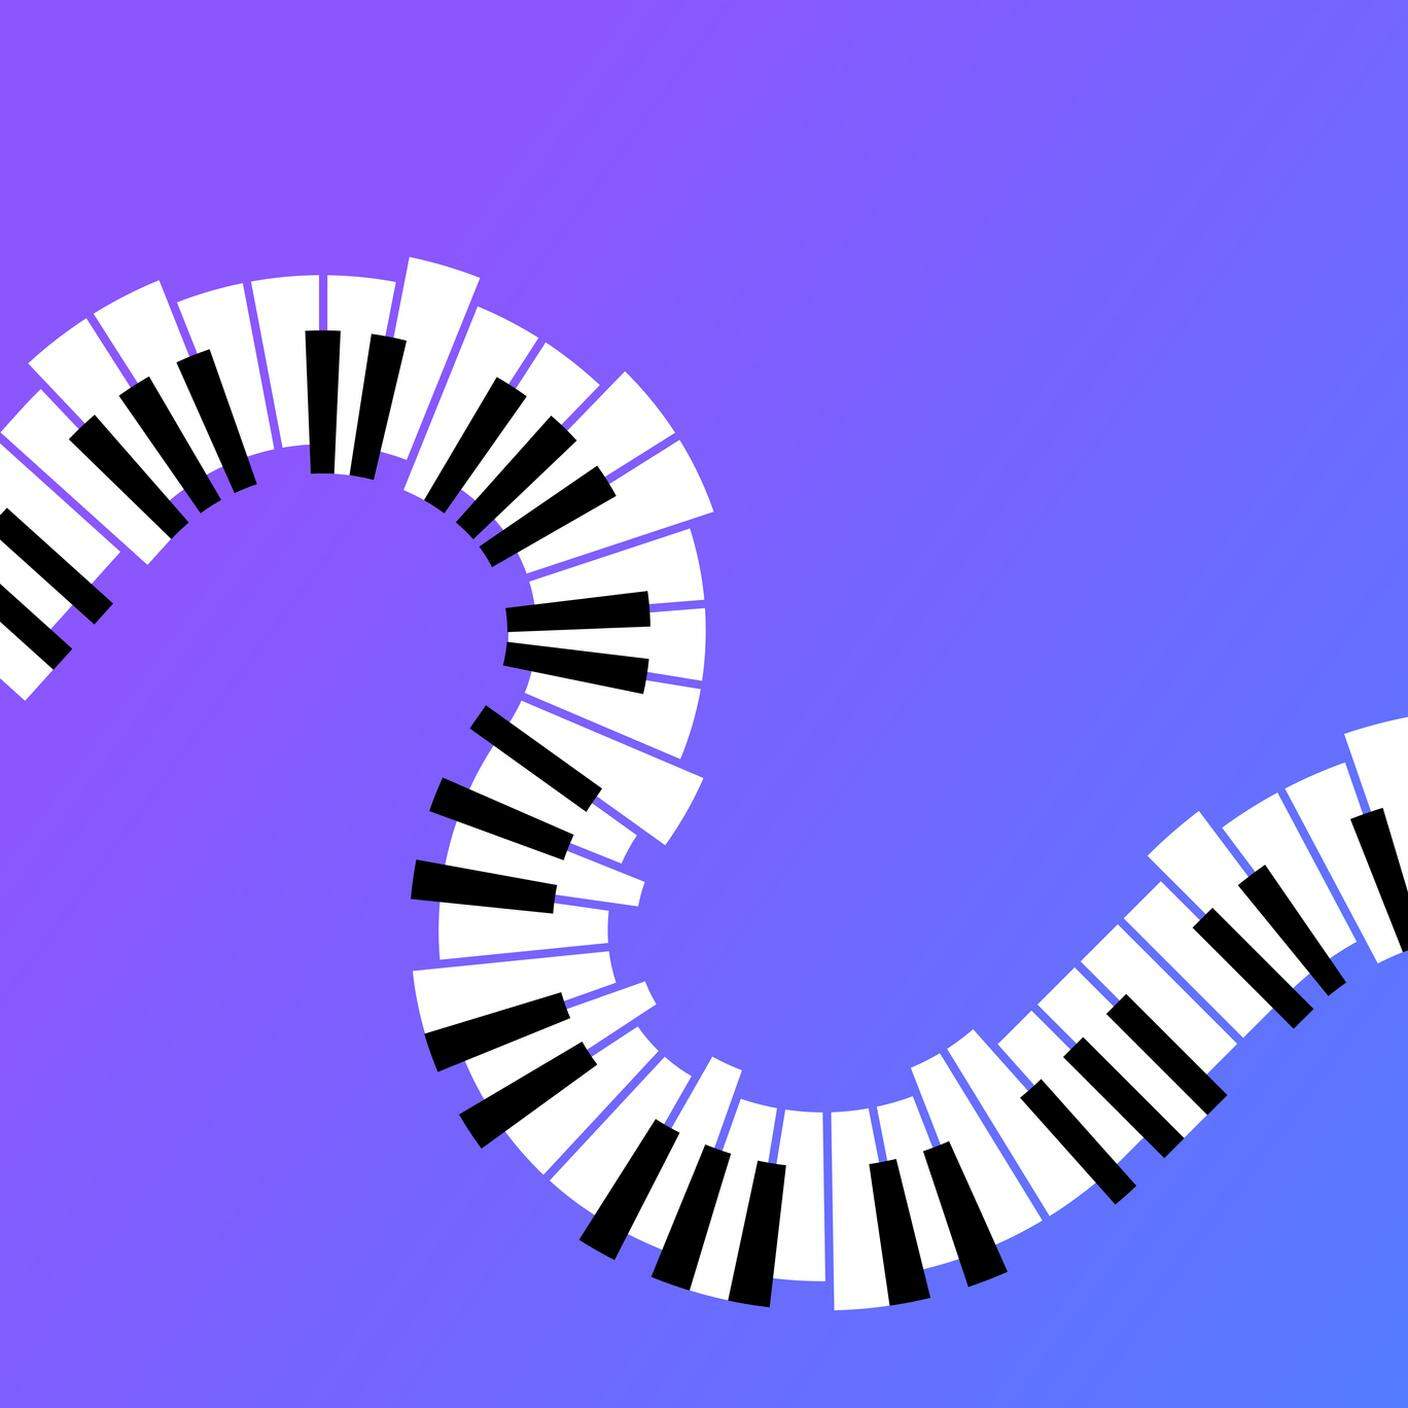 Illustrazione dello strumento musicale della nota musicale della chiave del pianoforte